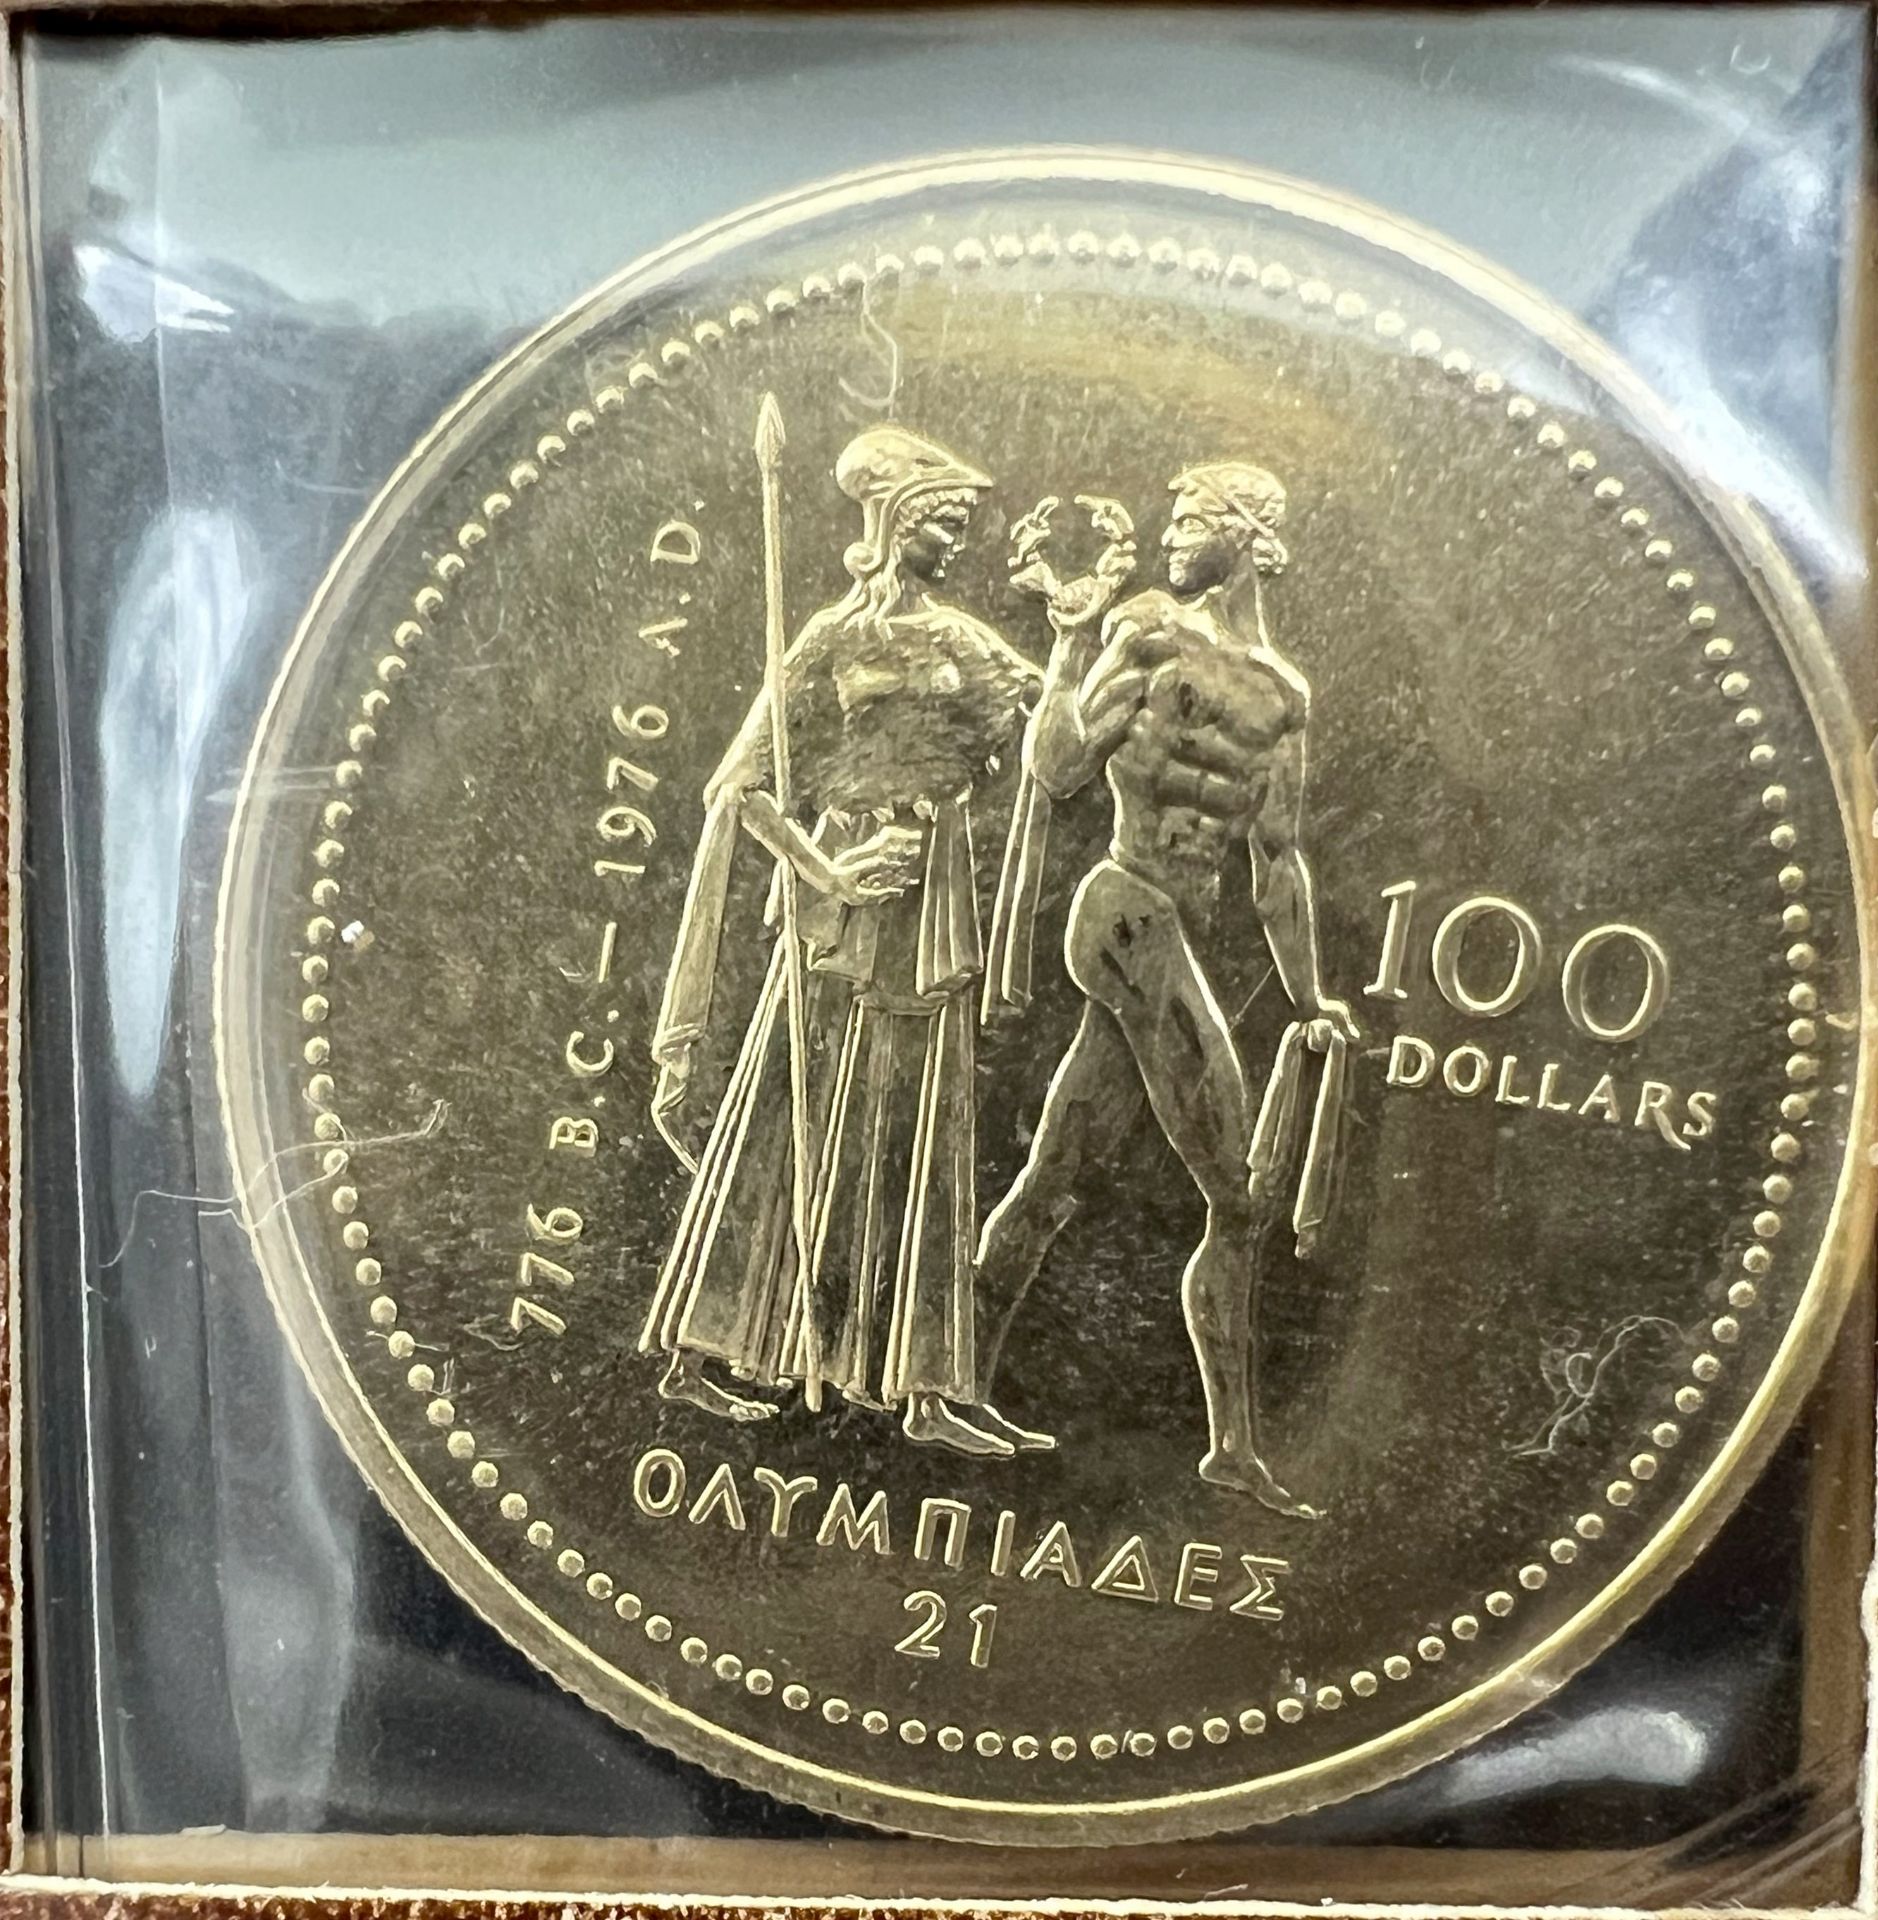 Goldmünze 100 Dollars "21. Olympische Spiele in Montreal / Elisabeth II.". Kanada 1976. - Bild 2 aus 4